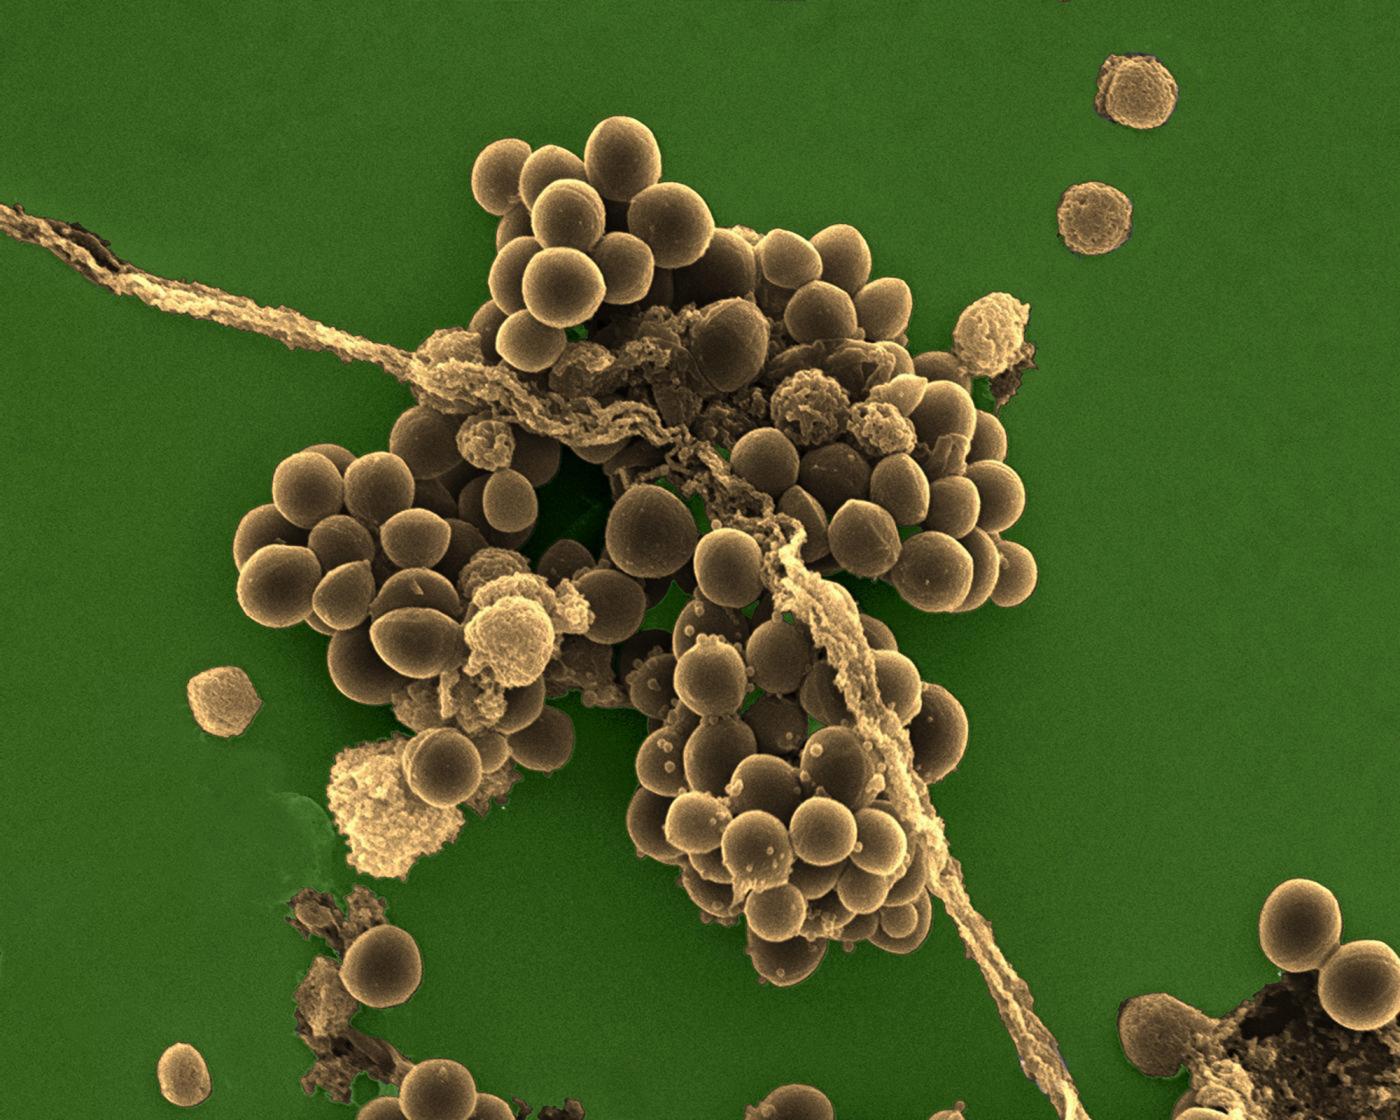 staphylococcus - Institut Pasteur